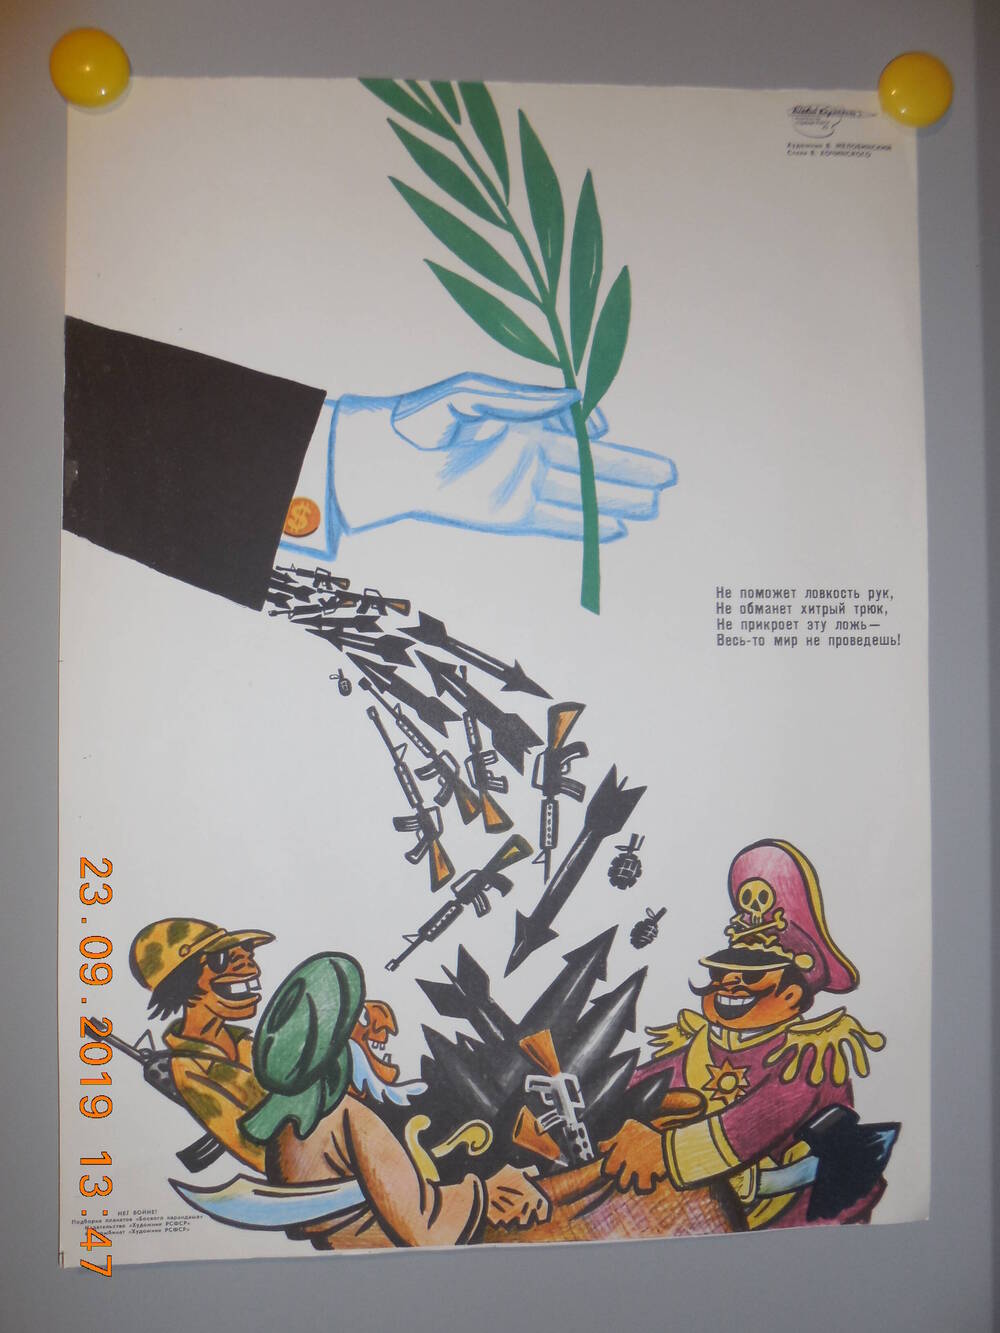 Плакат из подборки сатирических плакатов творческого объединения Боевой карандаш НЕТ ВОЙНЕ
Не поможет ловкость рук...